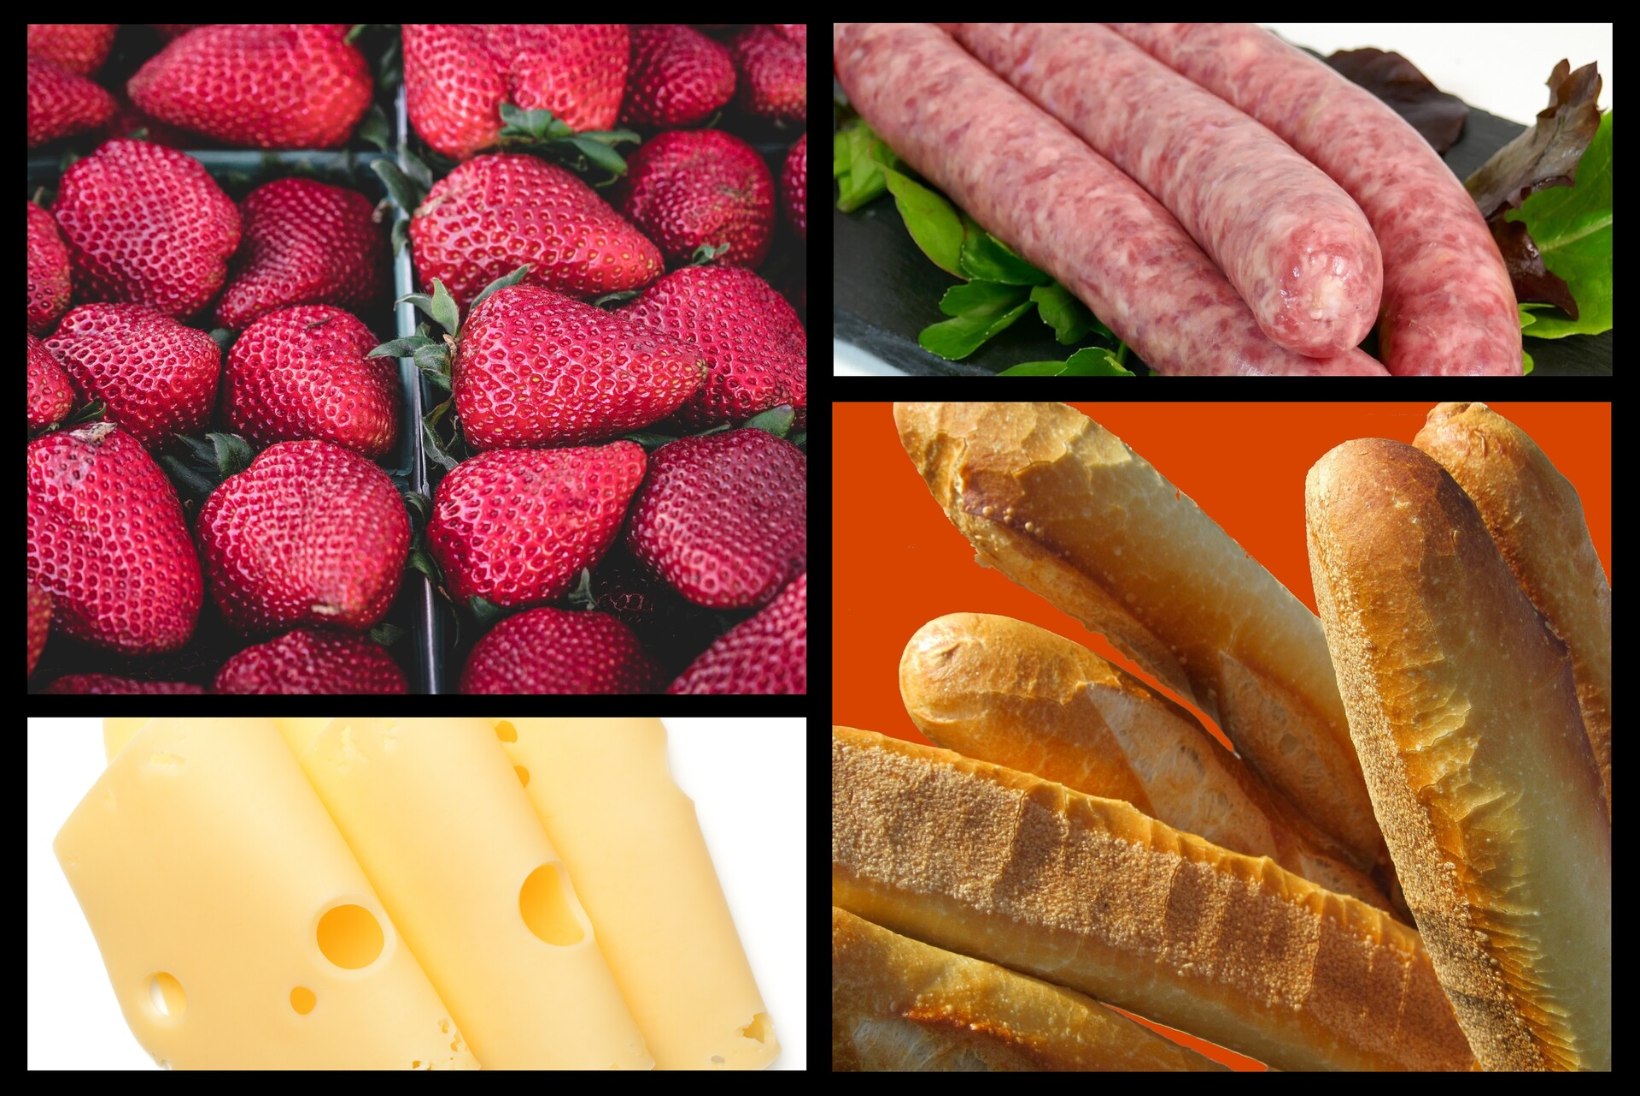 Säästujuht: poed, kus kilo juustu maksab 6,36 eurot ning kilo grillvorste saad kätte  4,40 euroga ja kilo maasikaid vaid 3,45 euroga  